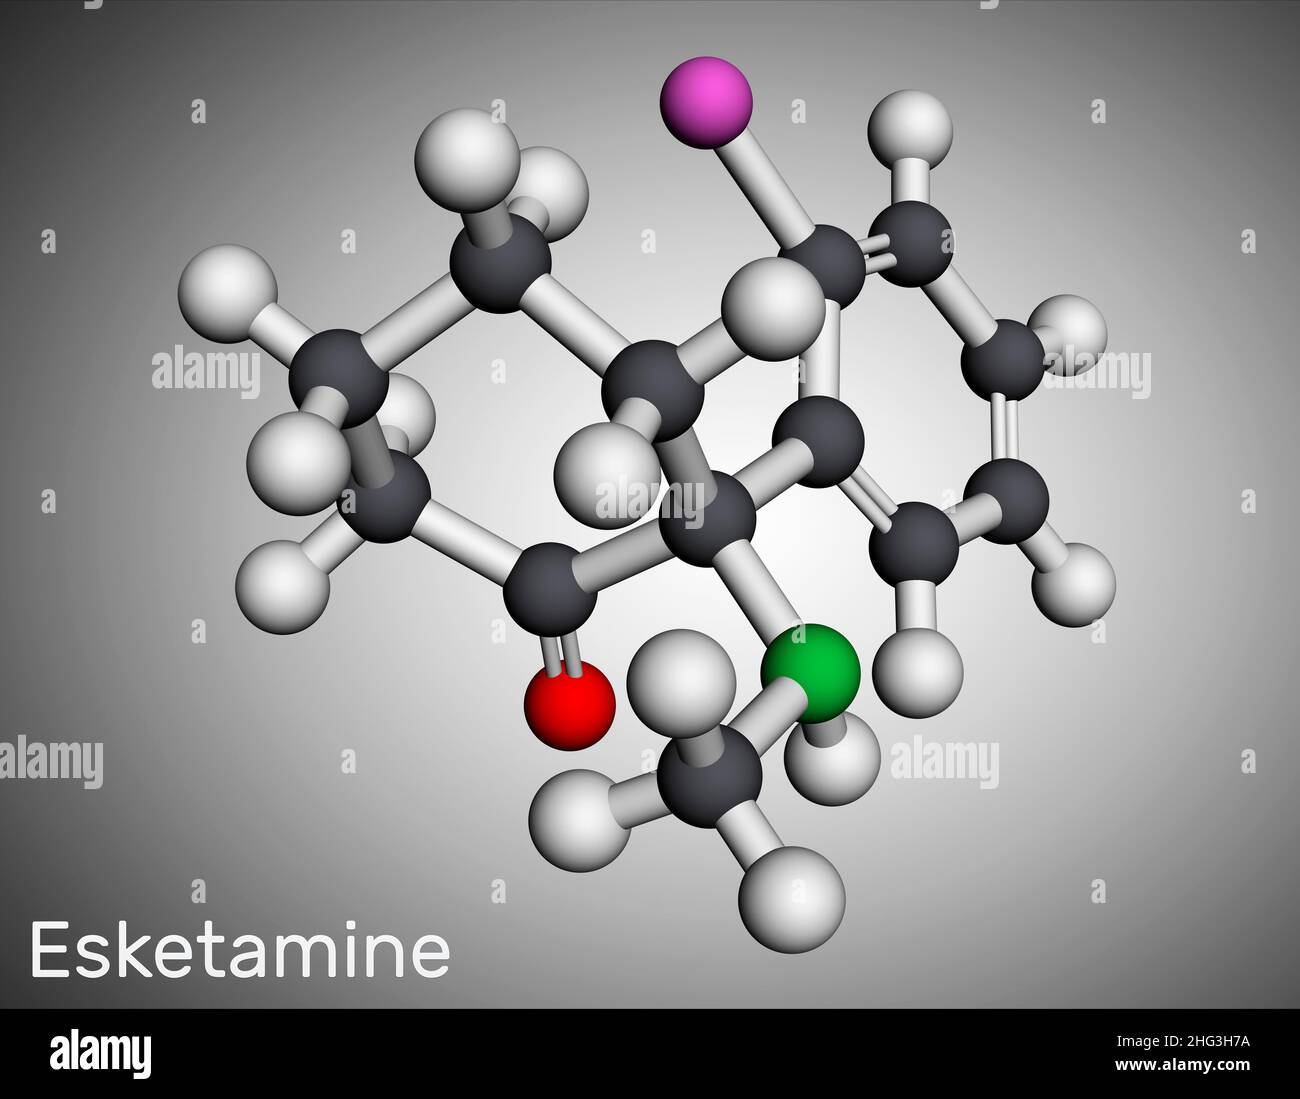 Molécula De Esketamina Es El S Enantiómero De La Ketamina Con Actividades Analgésicas